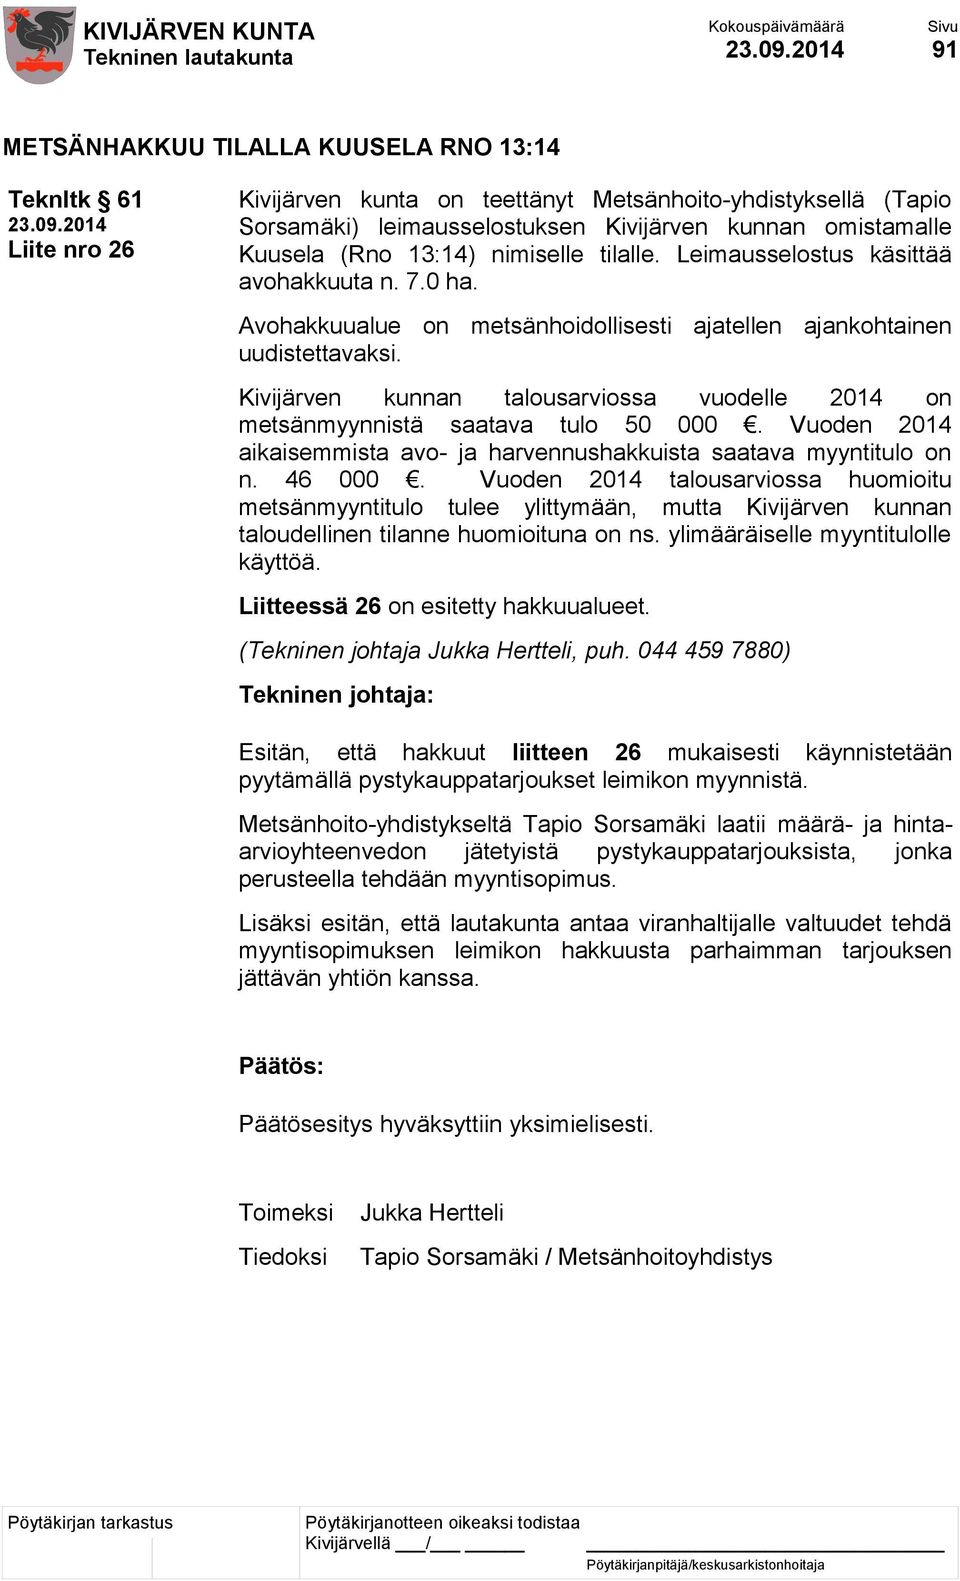 Kivijärven kunnan talousarviossa vuodelle 2014 on metsänmyynnistä saatava tulo 50 000. Vuoden 2014 aikaisemmista avo- ja harvennushakkuista saatava myyntitulo on n. 46 000.